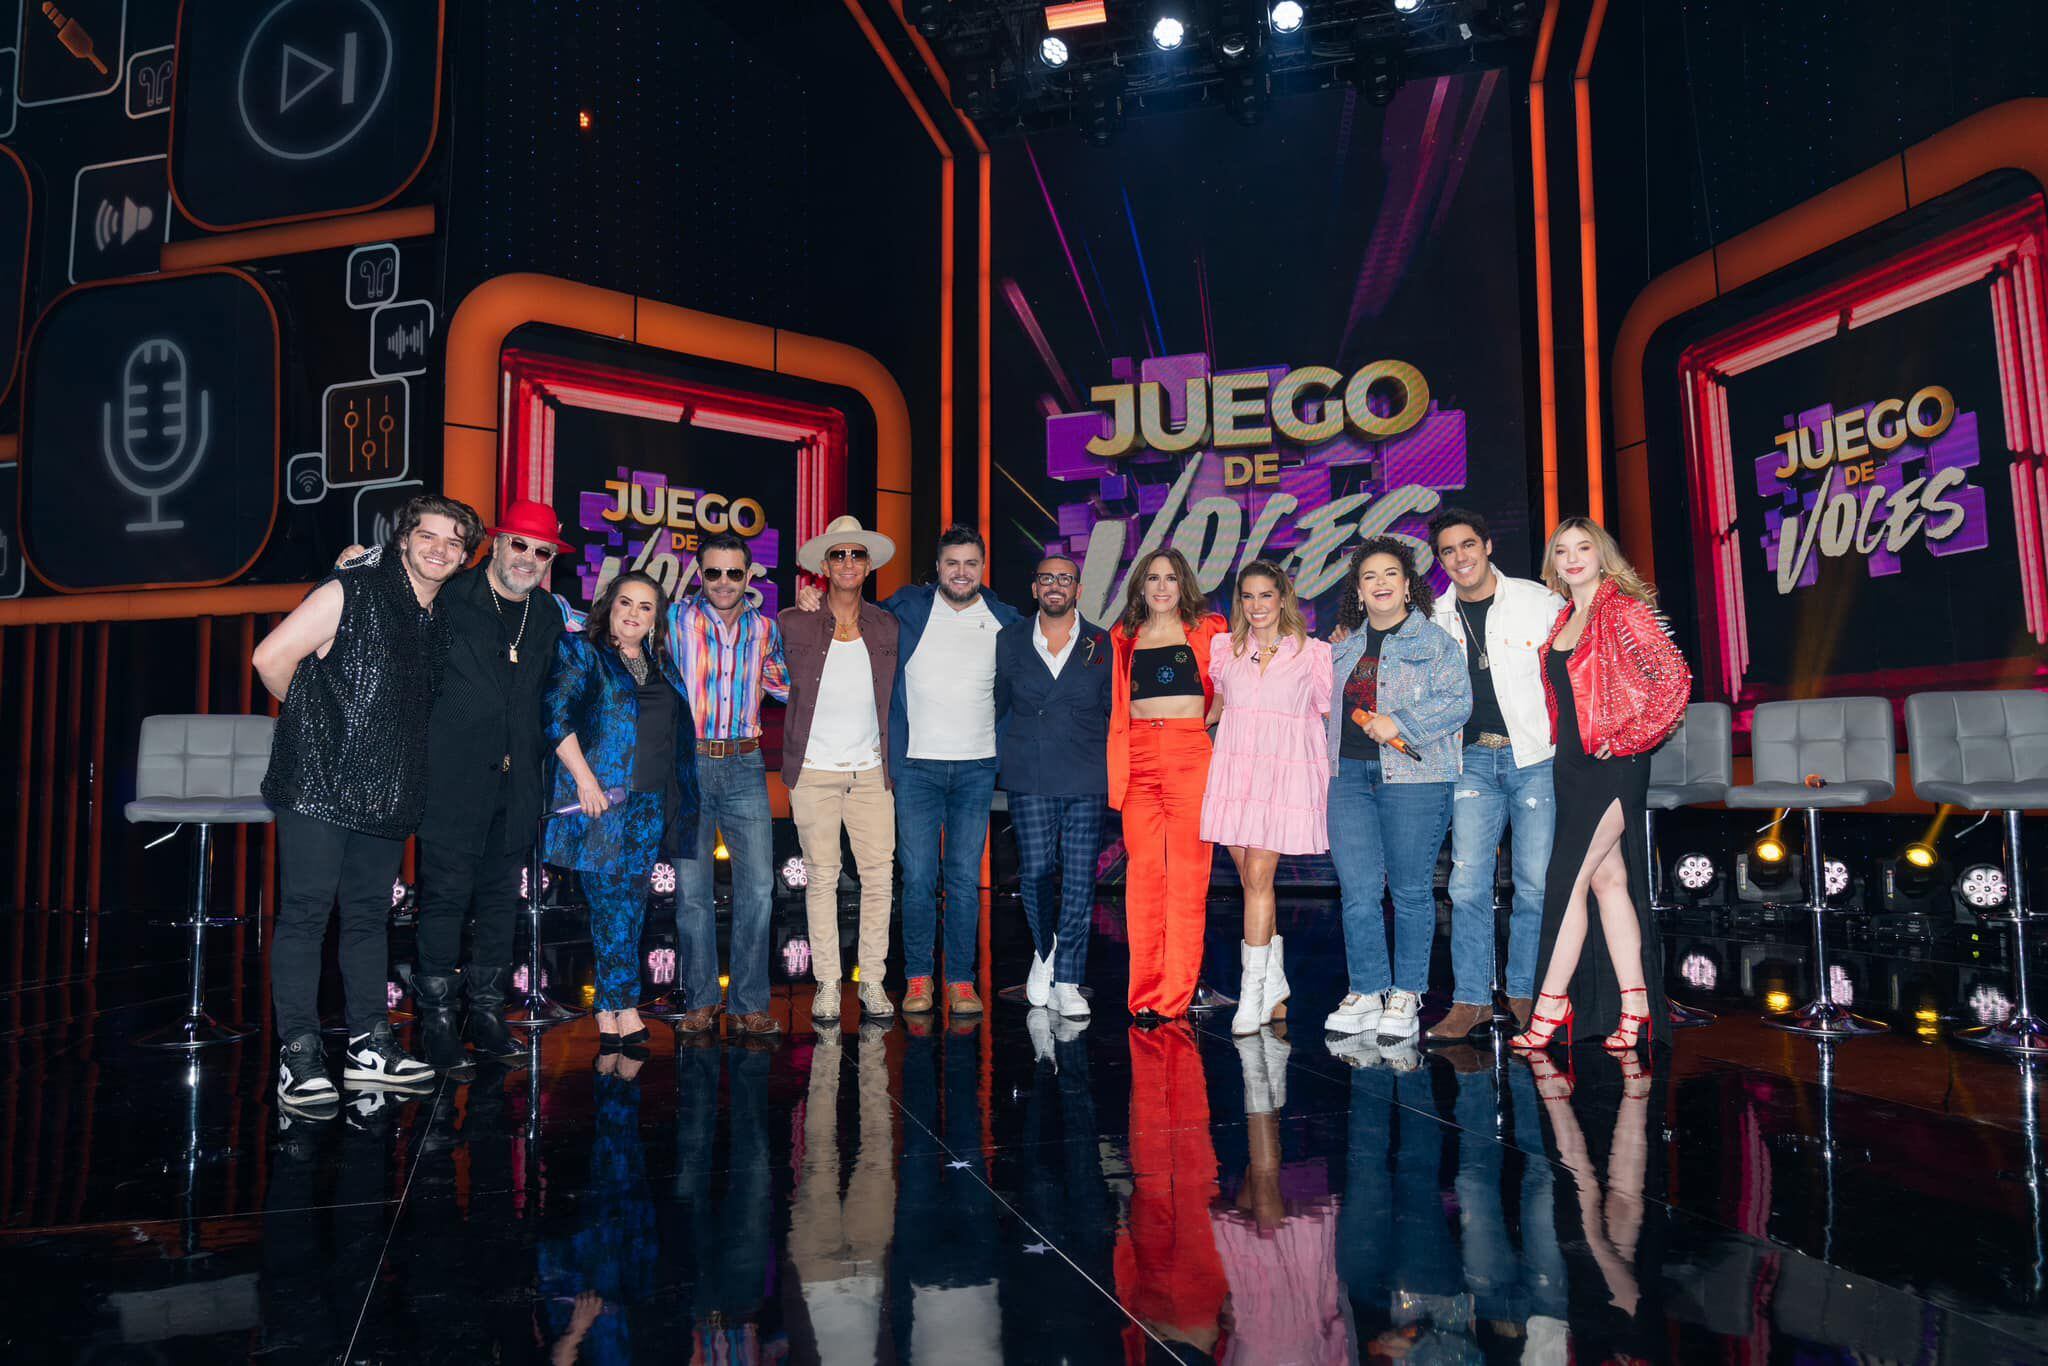 'Juego de Voces' se estrena en México este 14 de abril, una semana después de hacerlo en Estados Unidos por la señal de Univision.